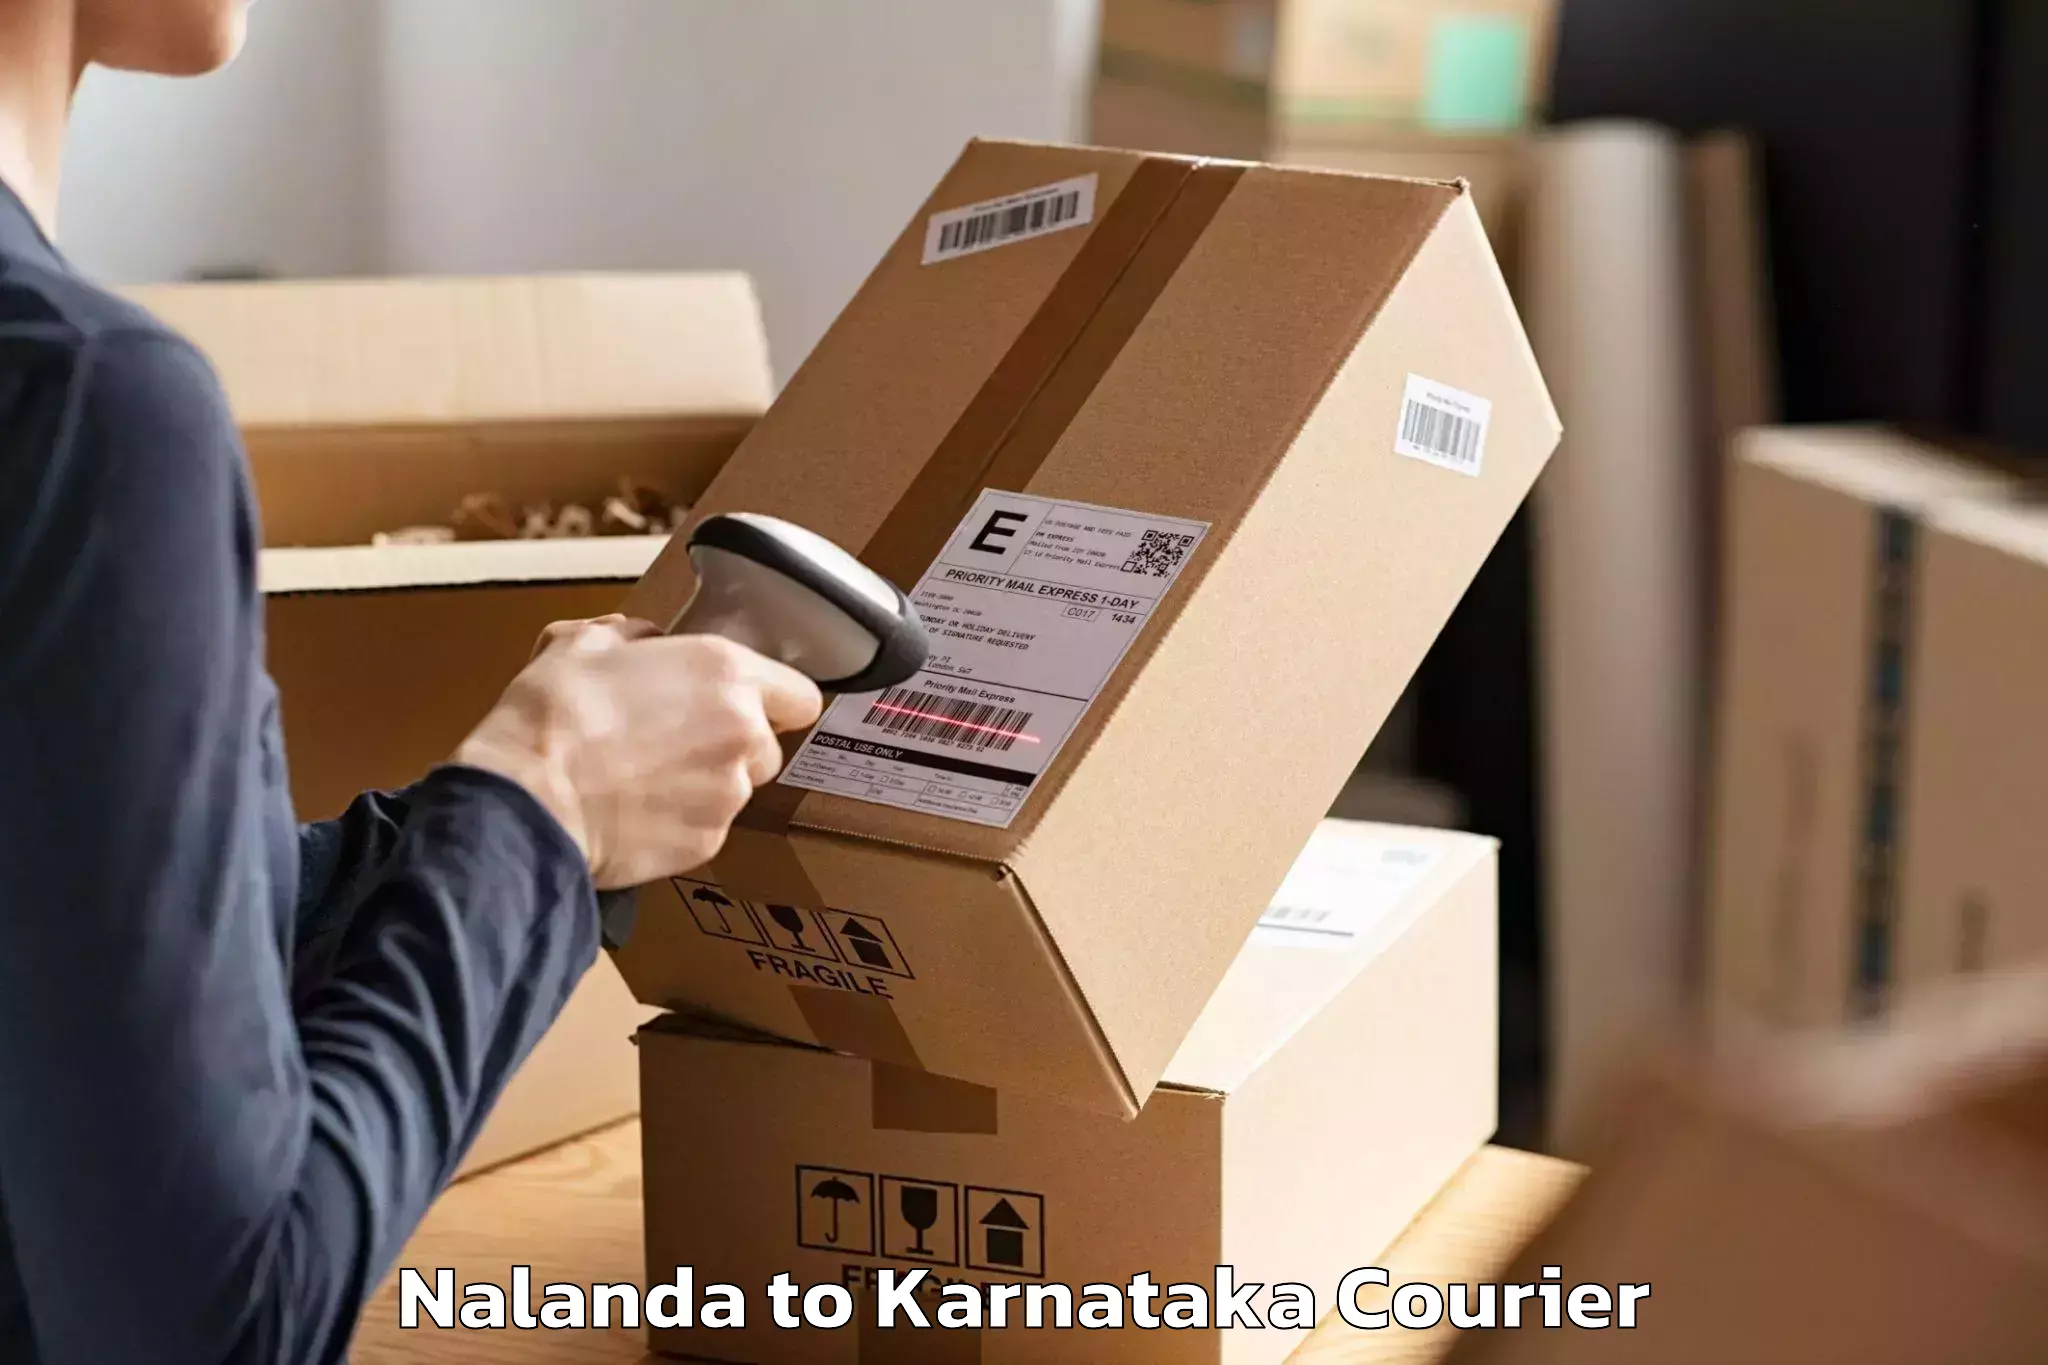 Efficient moving company Nalanda to Tavarekere